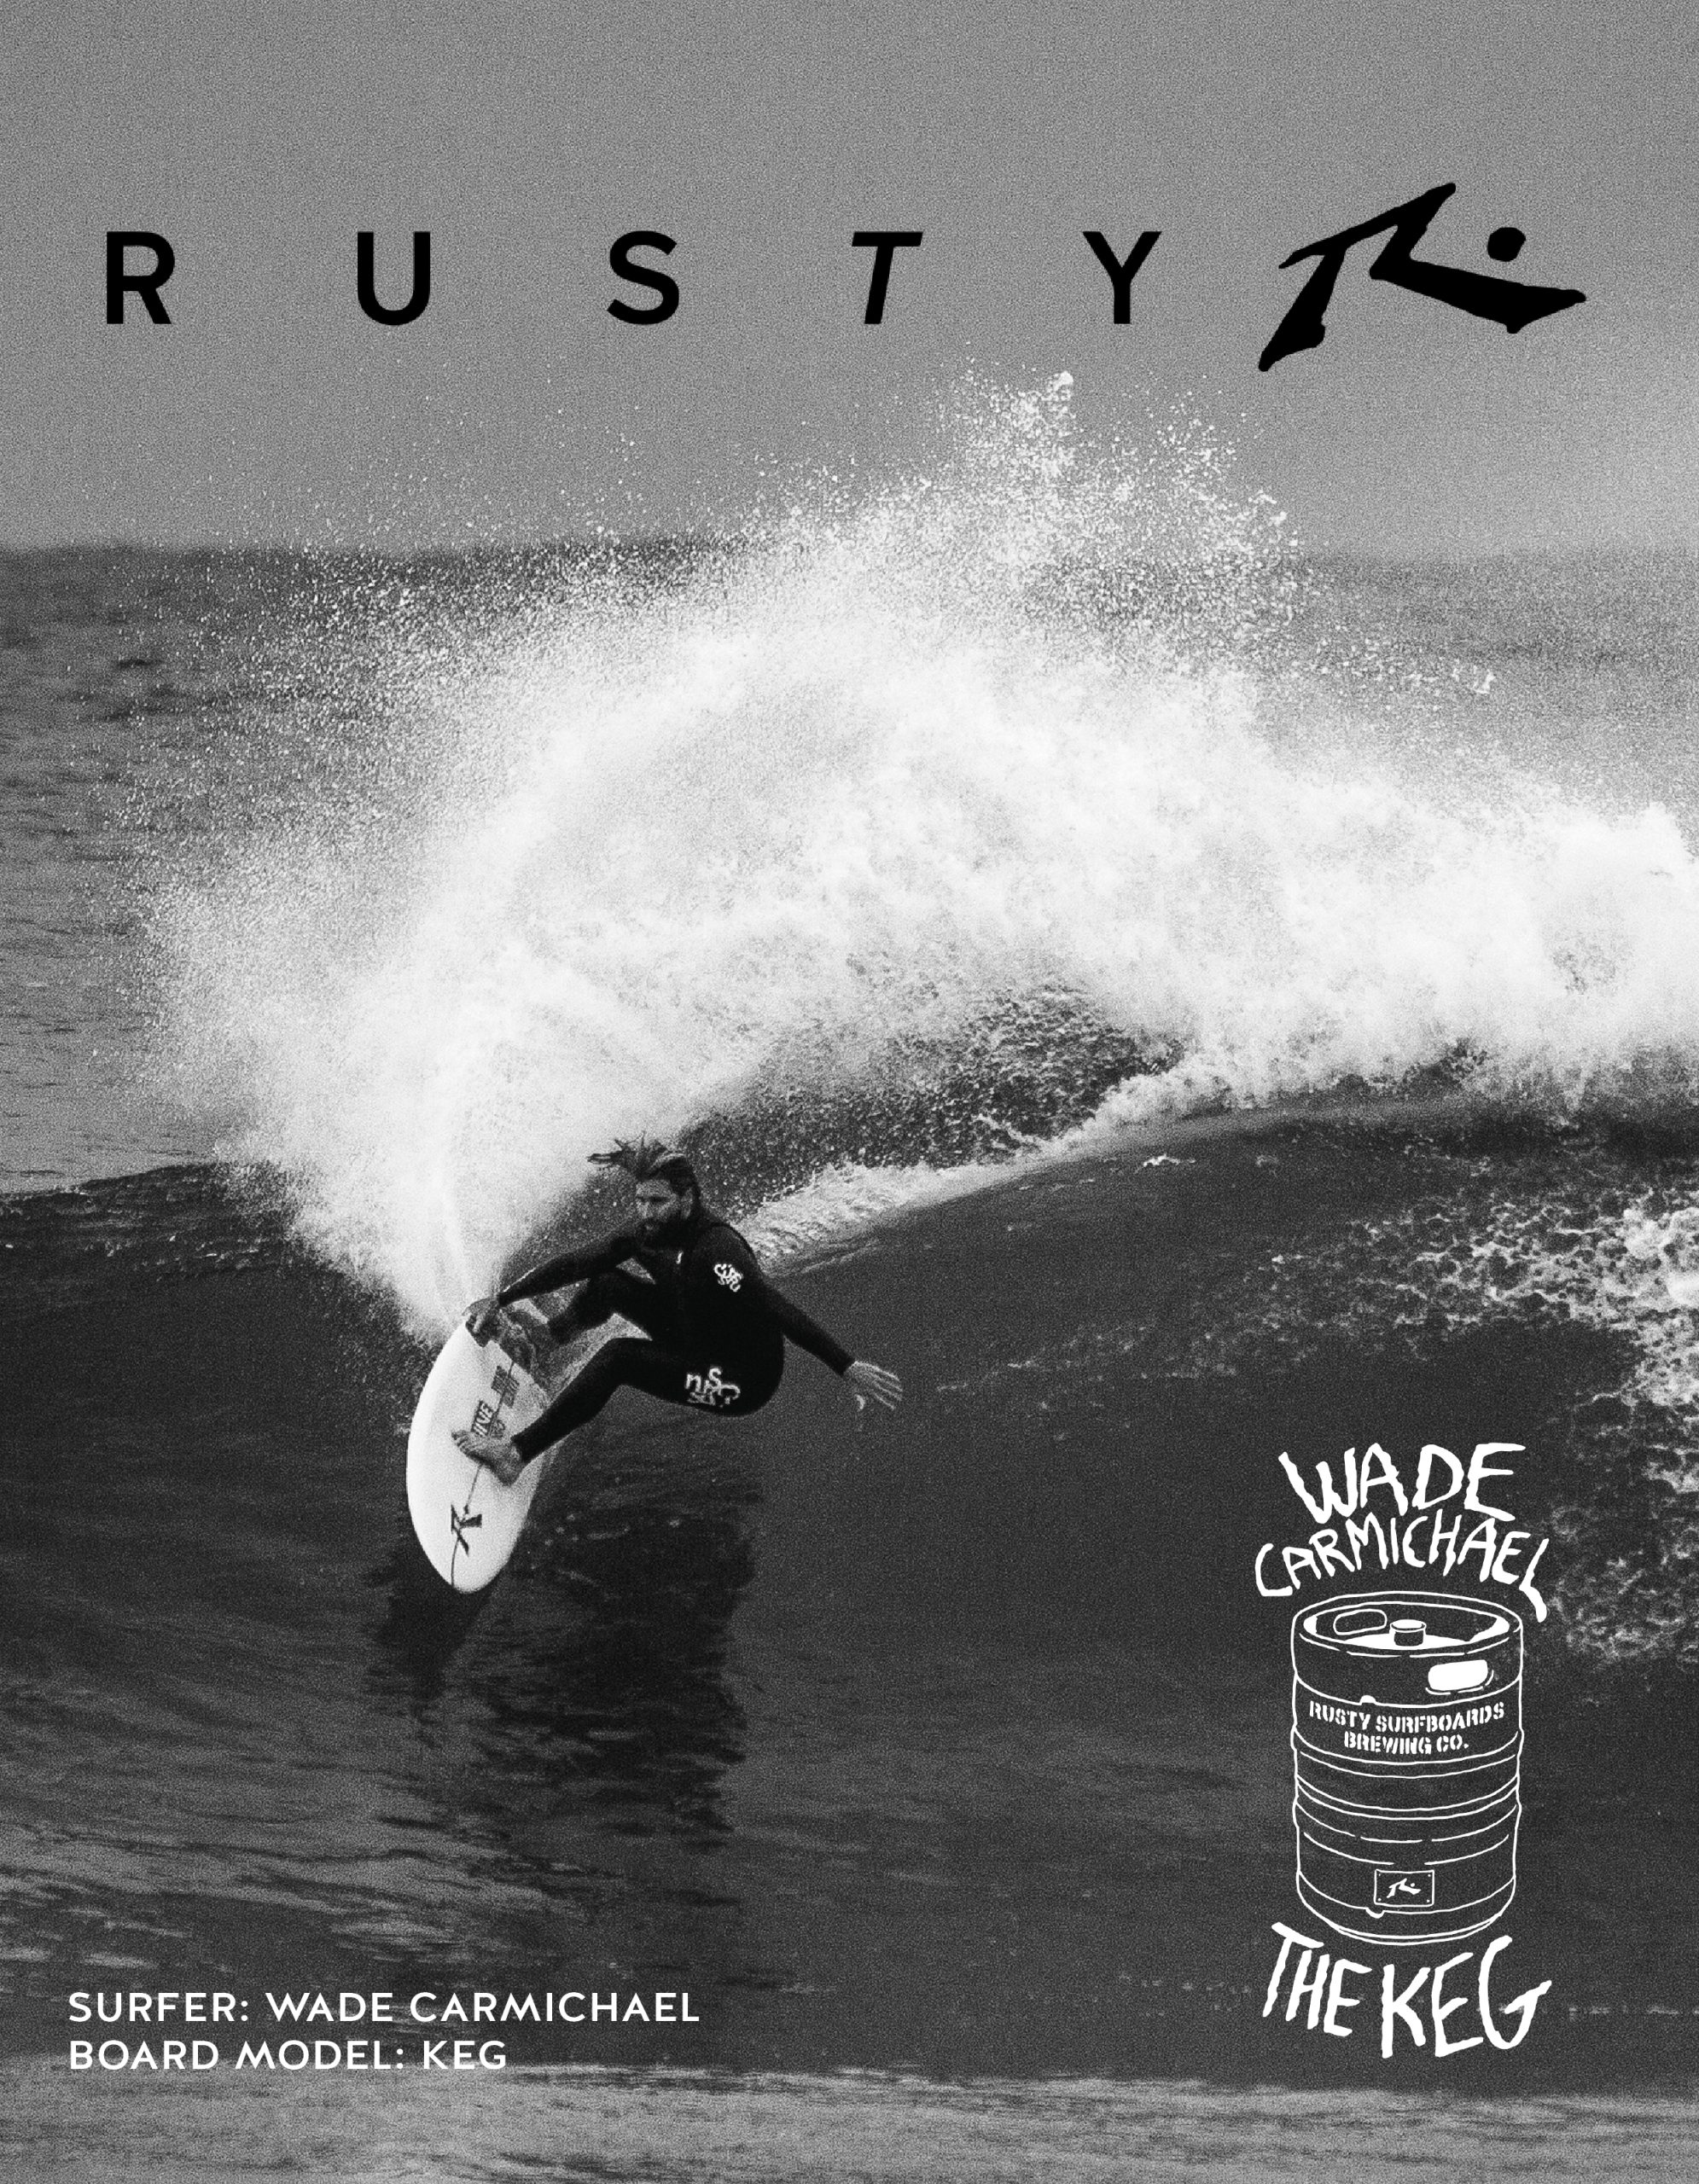 120 Rusty surfboards